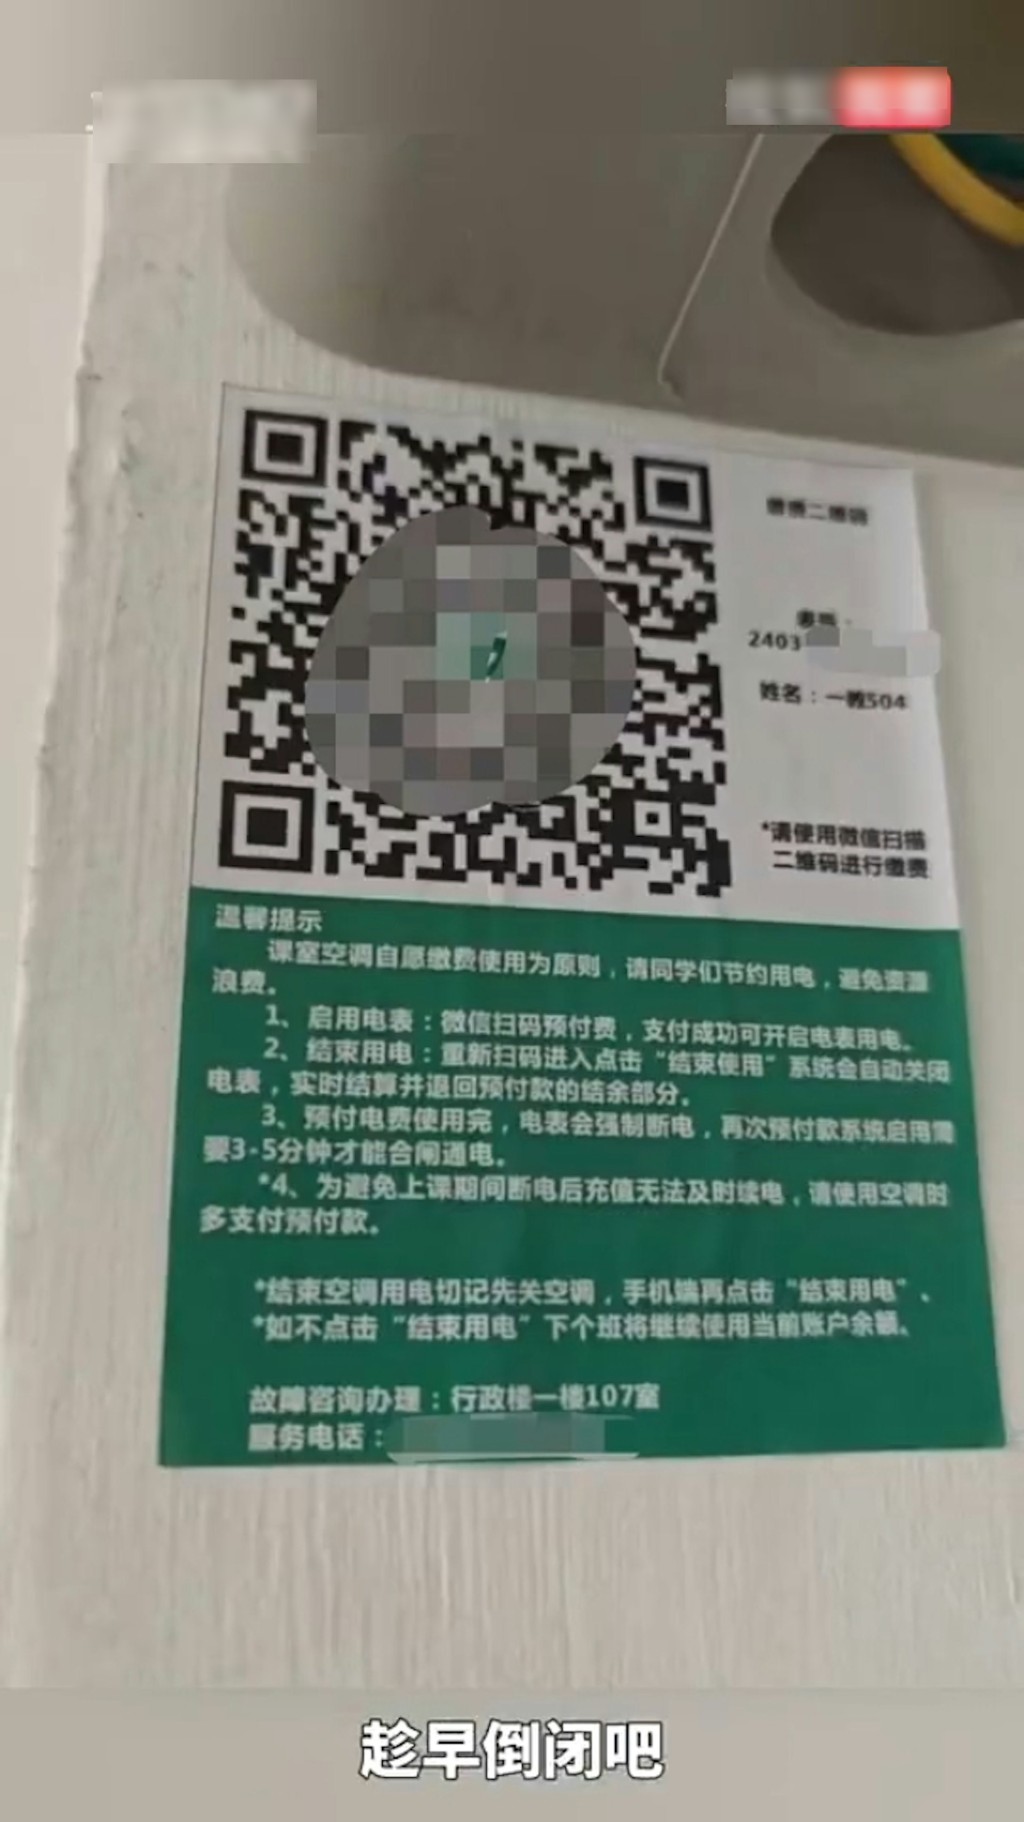 惠州有高校要求学生扫QR Code付钱才可开冷气上堂，遭外界质疑。